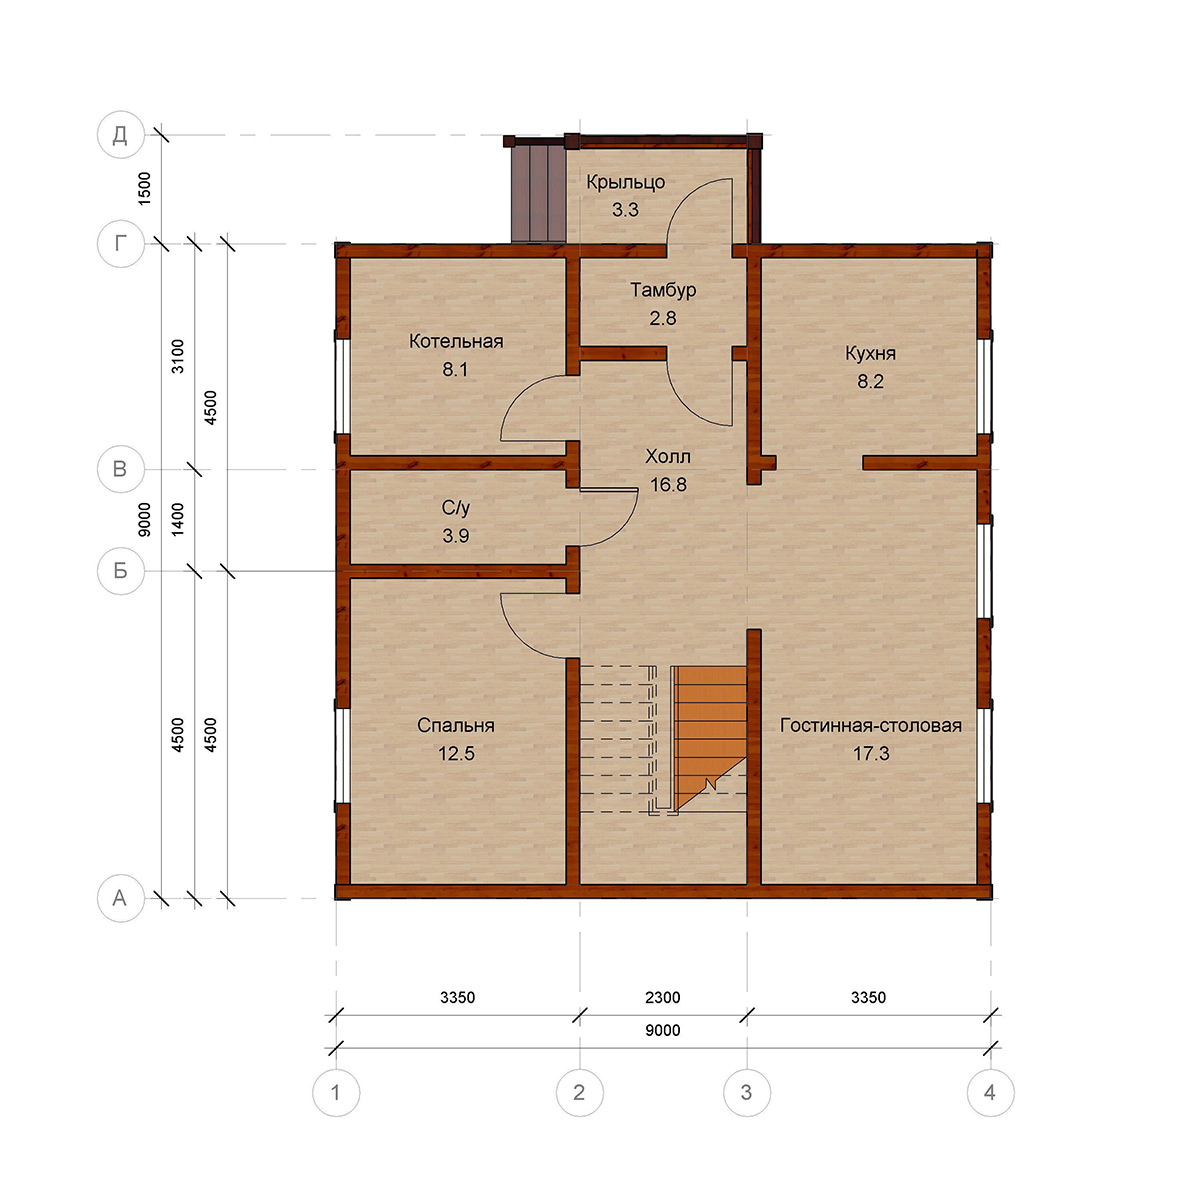 Проекты и варианты планировки частных жилых одноэтажных и двухэтажных домов квадратной формы 8х8, 9х9, 10х10 и других размеров